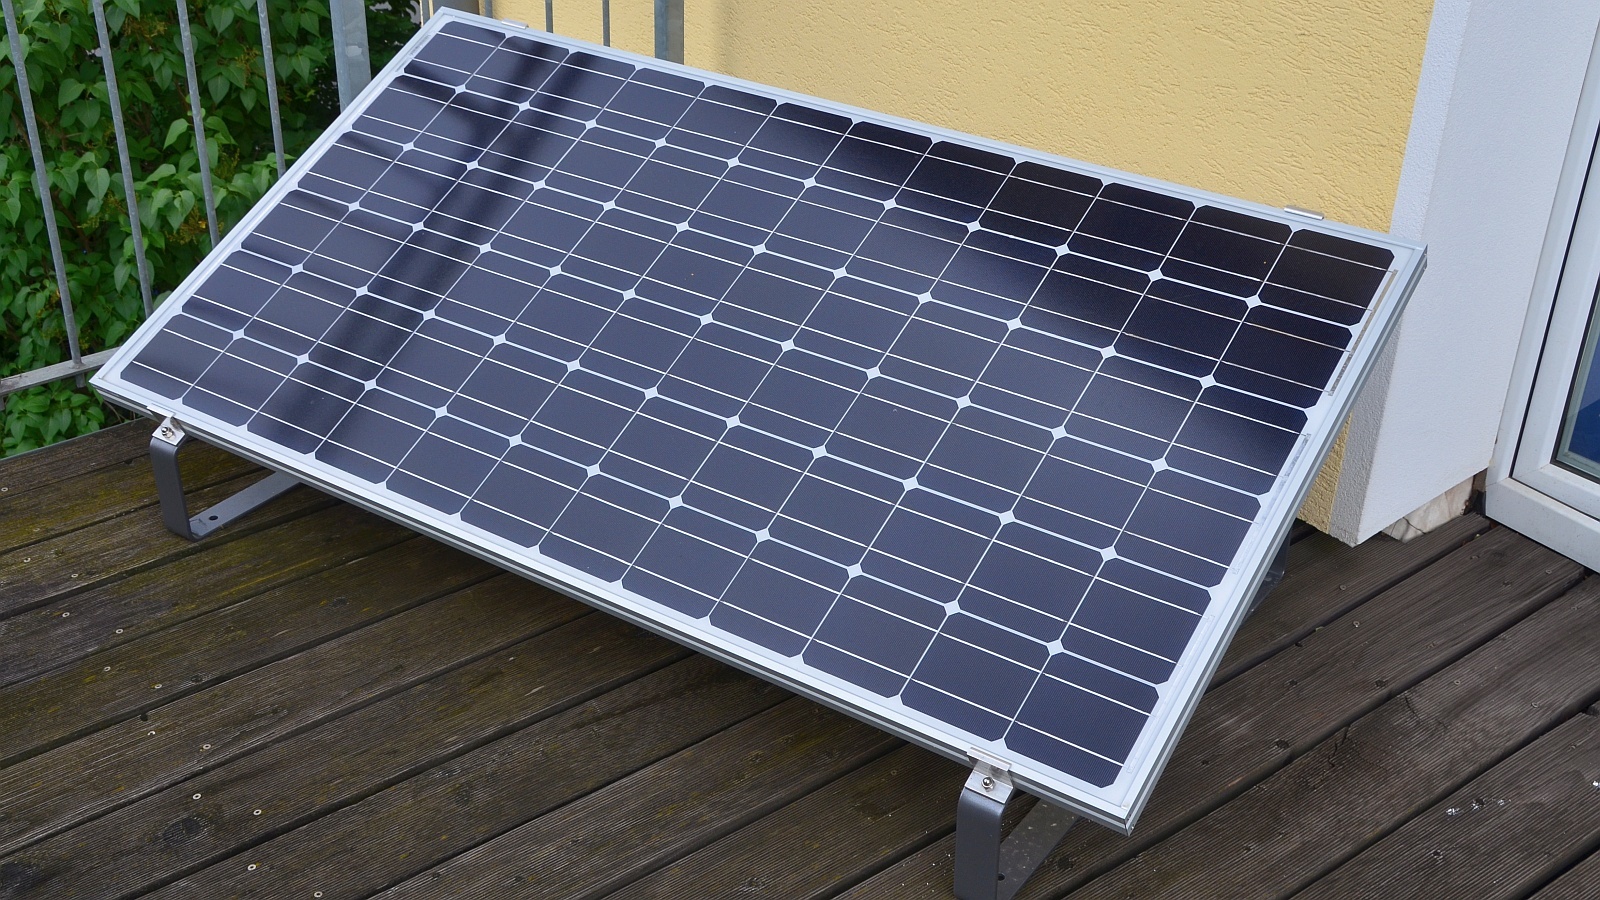 Photovoltaik für die Steckdose: Steckerfertige Solarmodule teilweise  zulässig | heise online